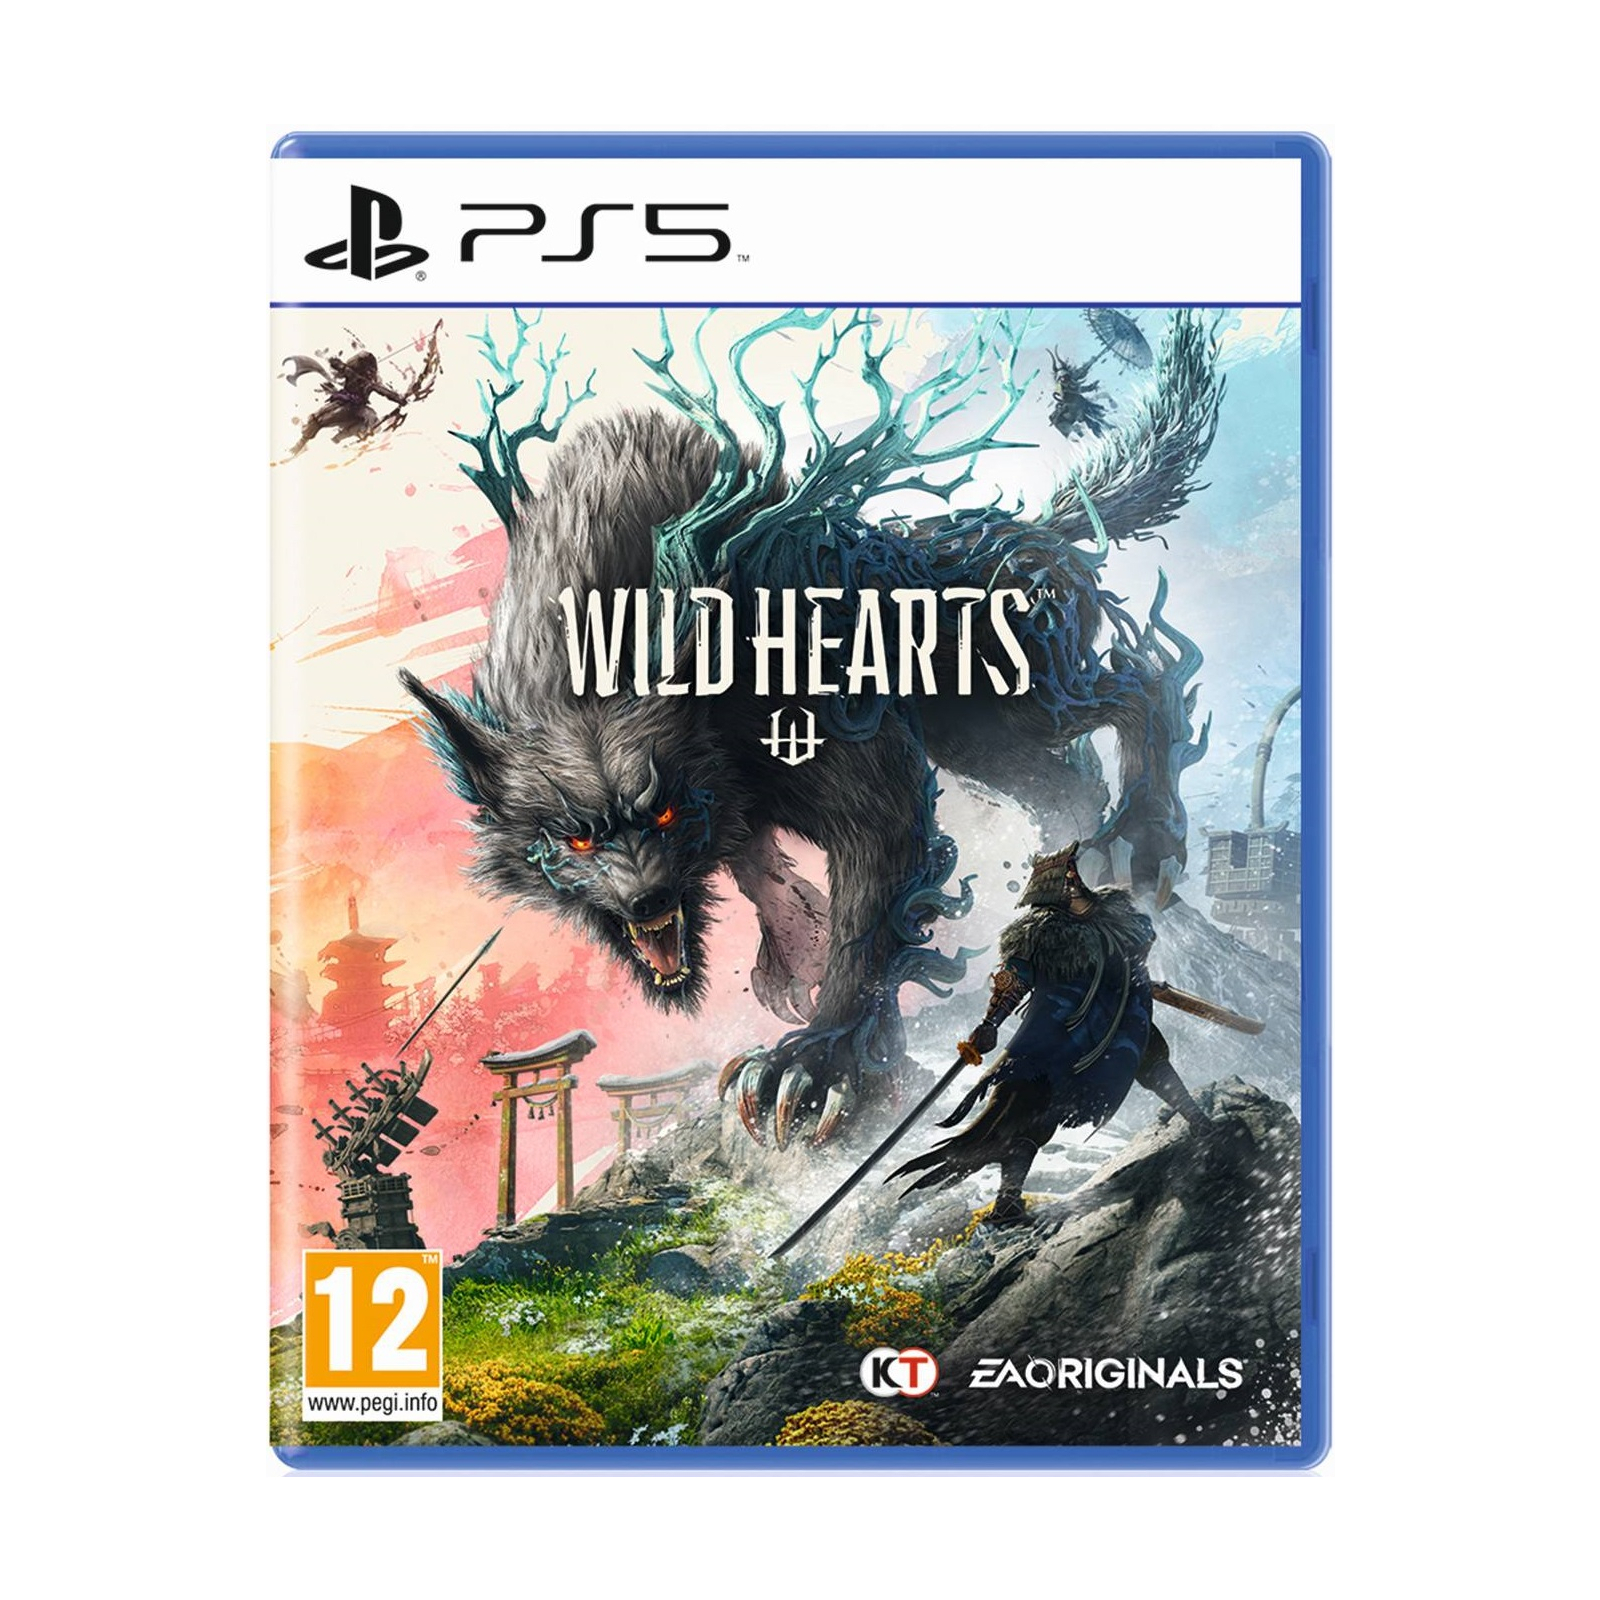 Игра Sony Wild Hearts [English version] (1139323)